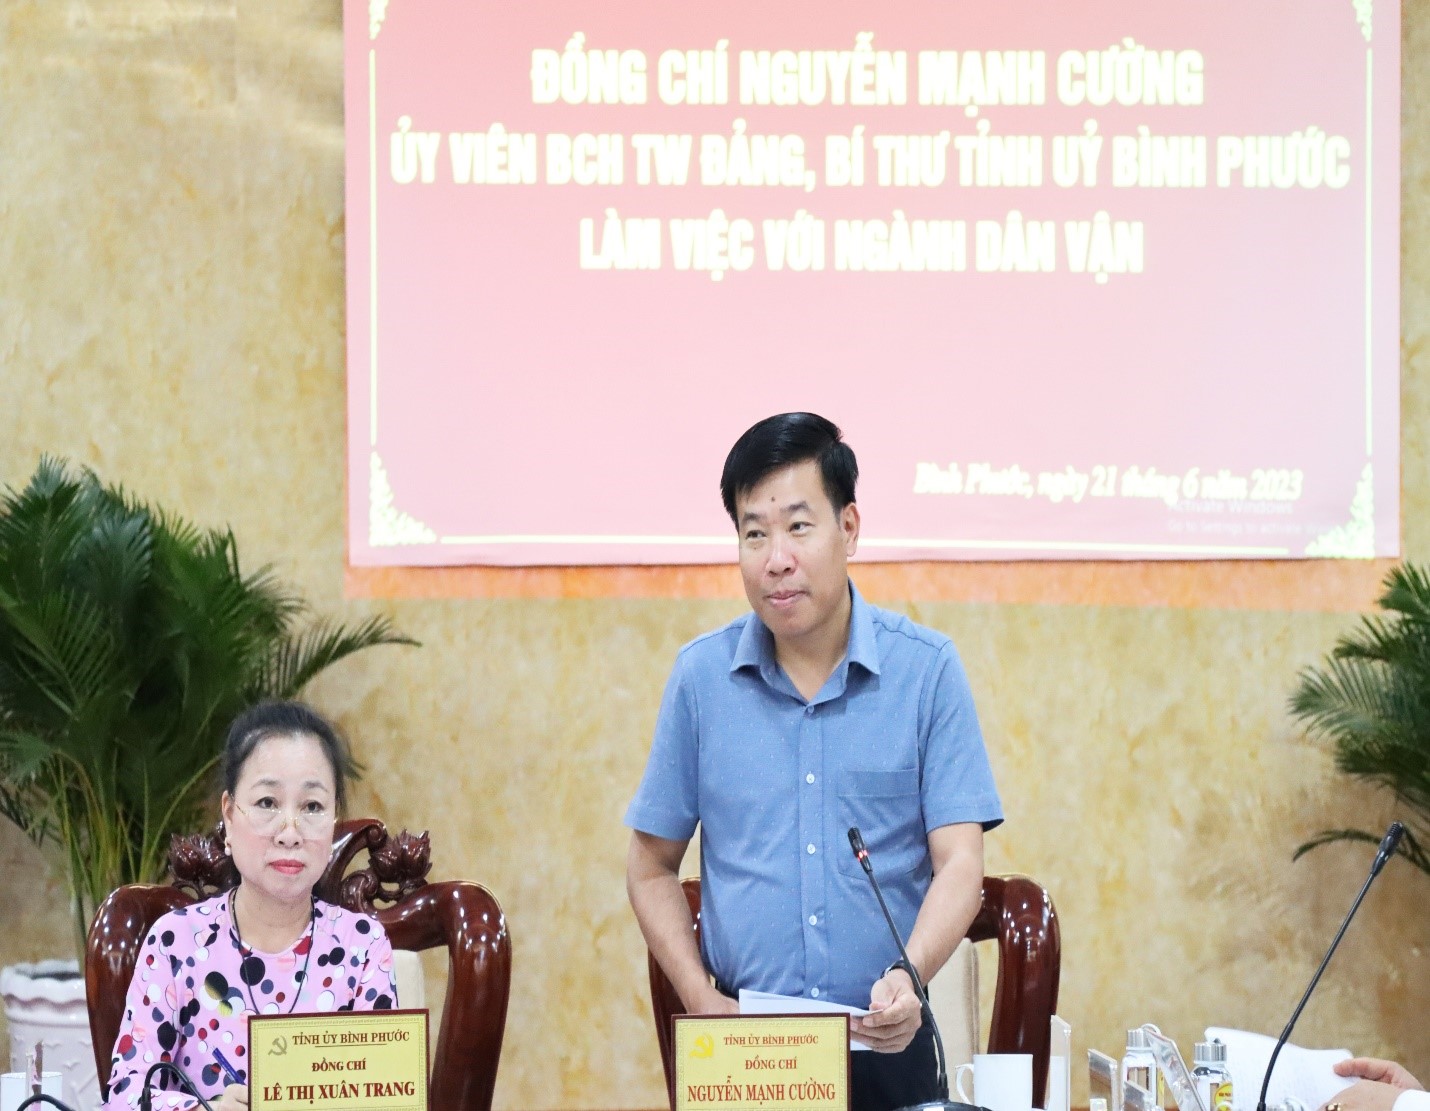 Đồng chí Nguyễn Mạnh Cường, Ủy viên Trung ương Đảng, Bí thư Tỉnh ủy phát biểu, chỉ đạo buổi làm việc với Ngành Dân vận Bình Phước